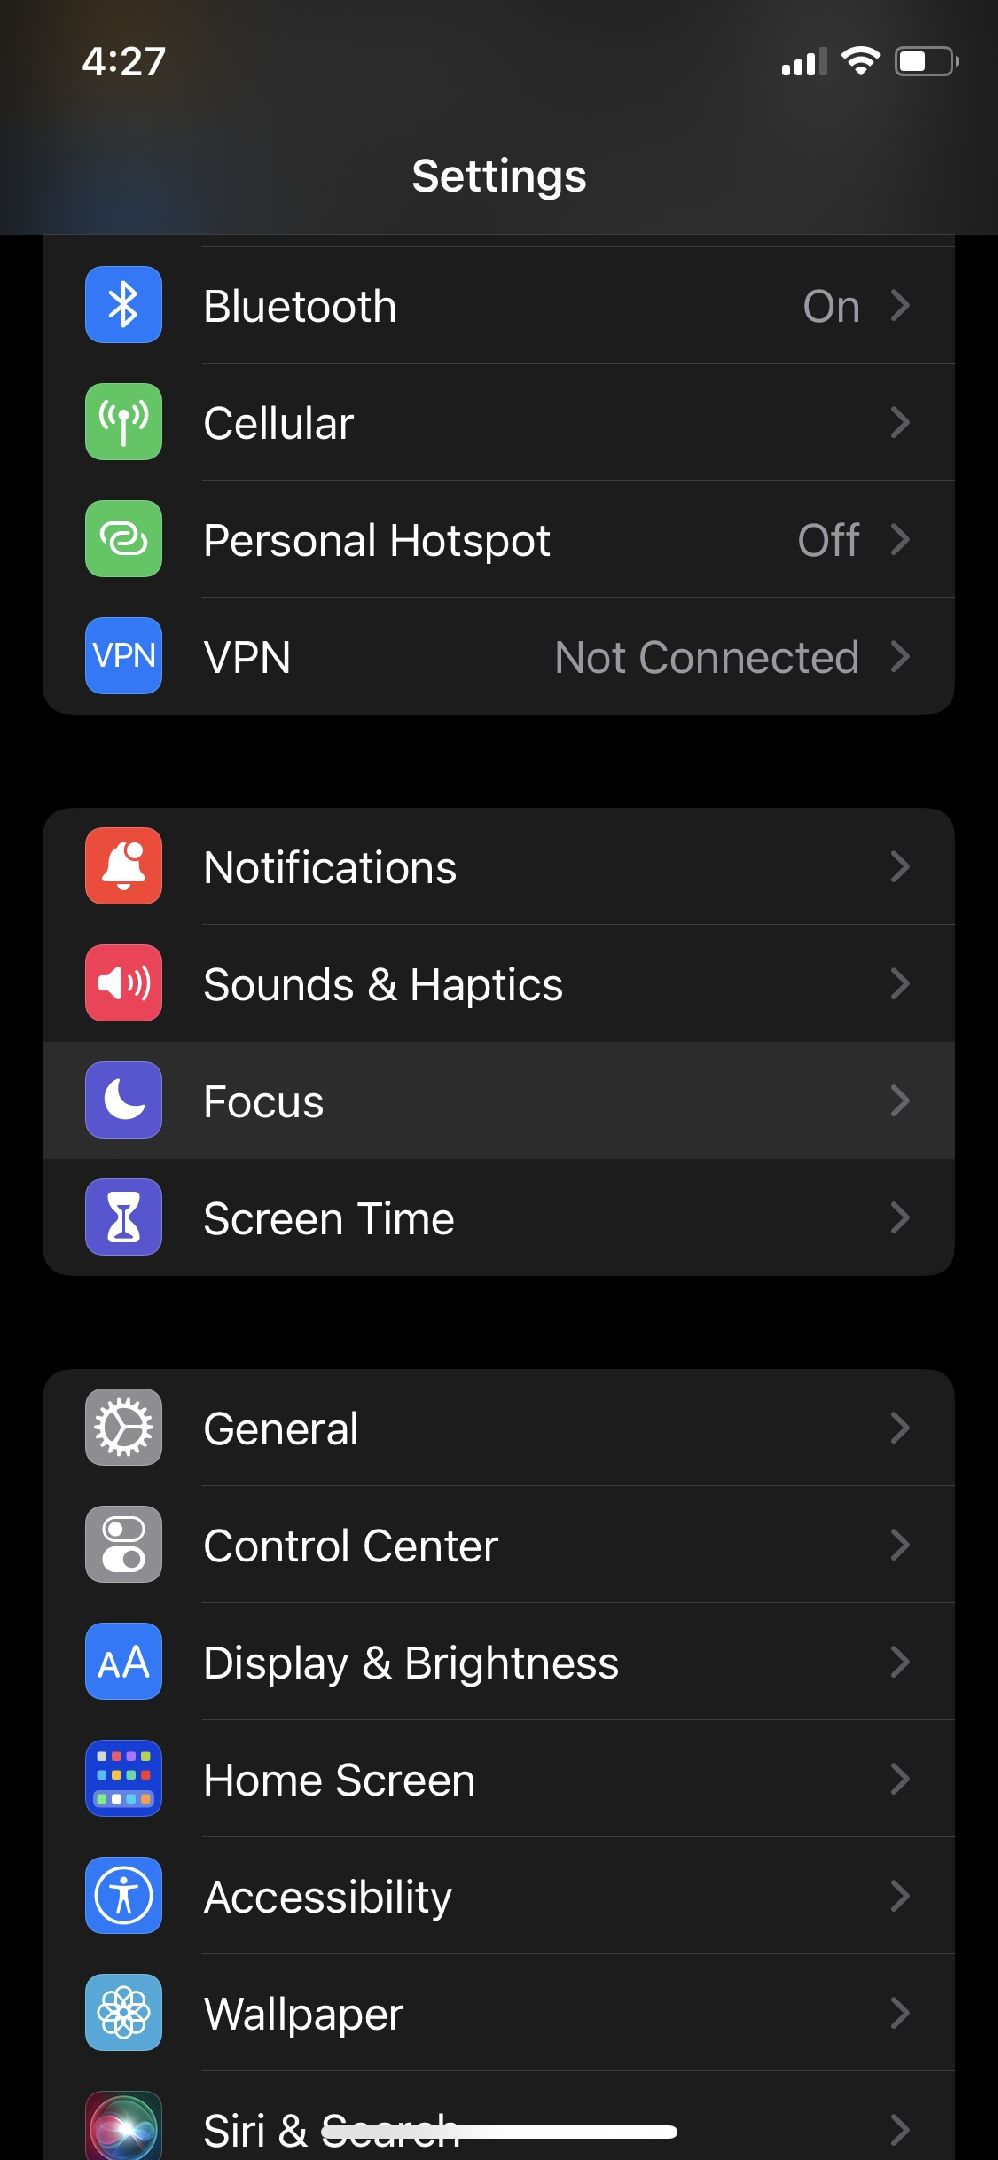 iOS 15 settings menu